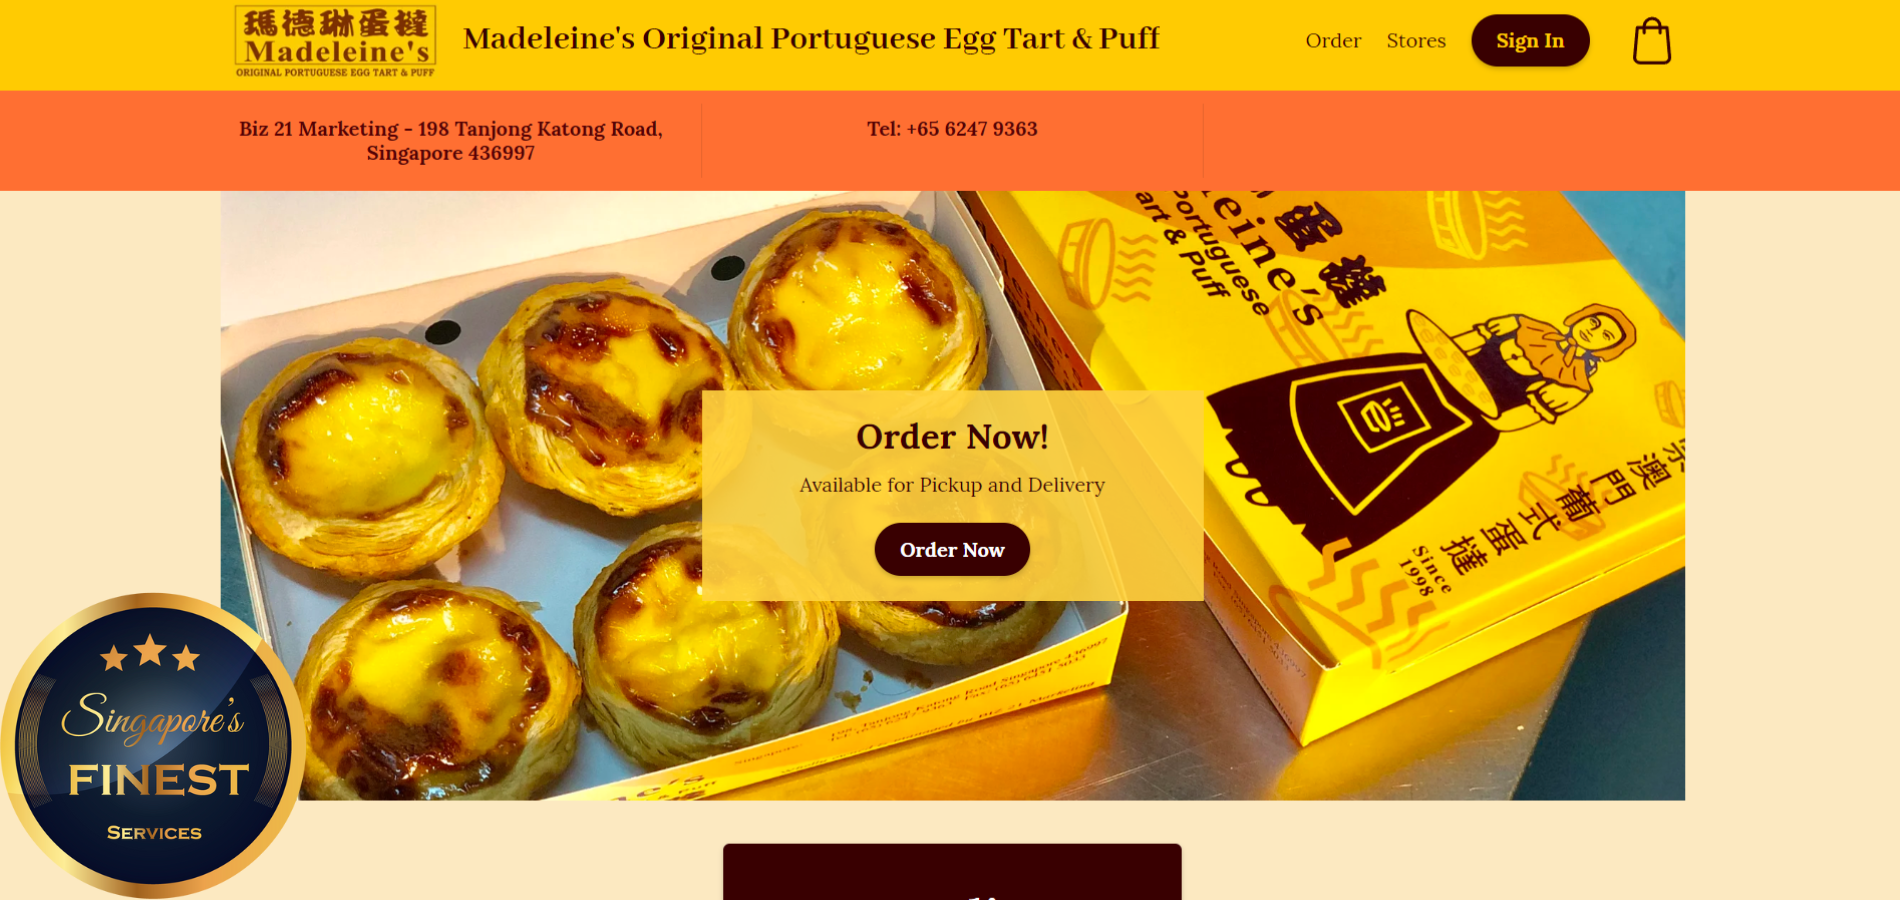 Best Egg Tart In Singapore